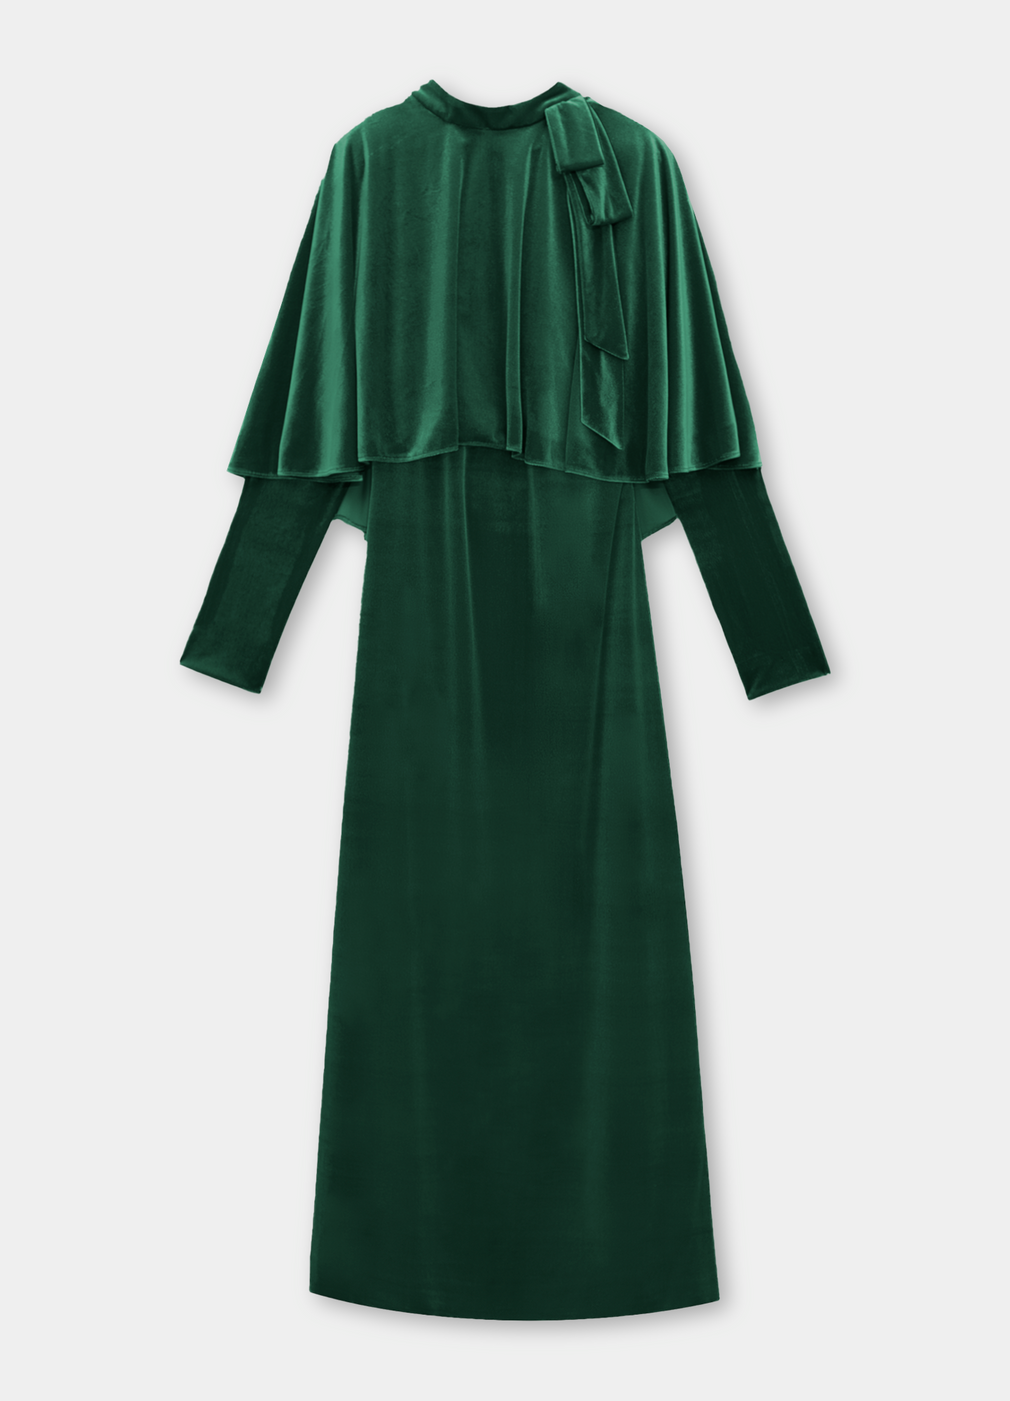 Vestido de terciopelo con capelina de Cherubina (315 euros).